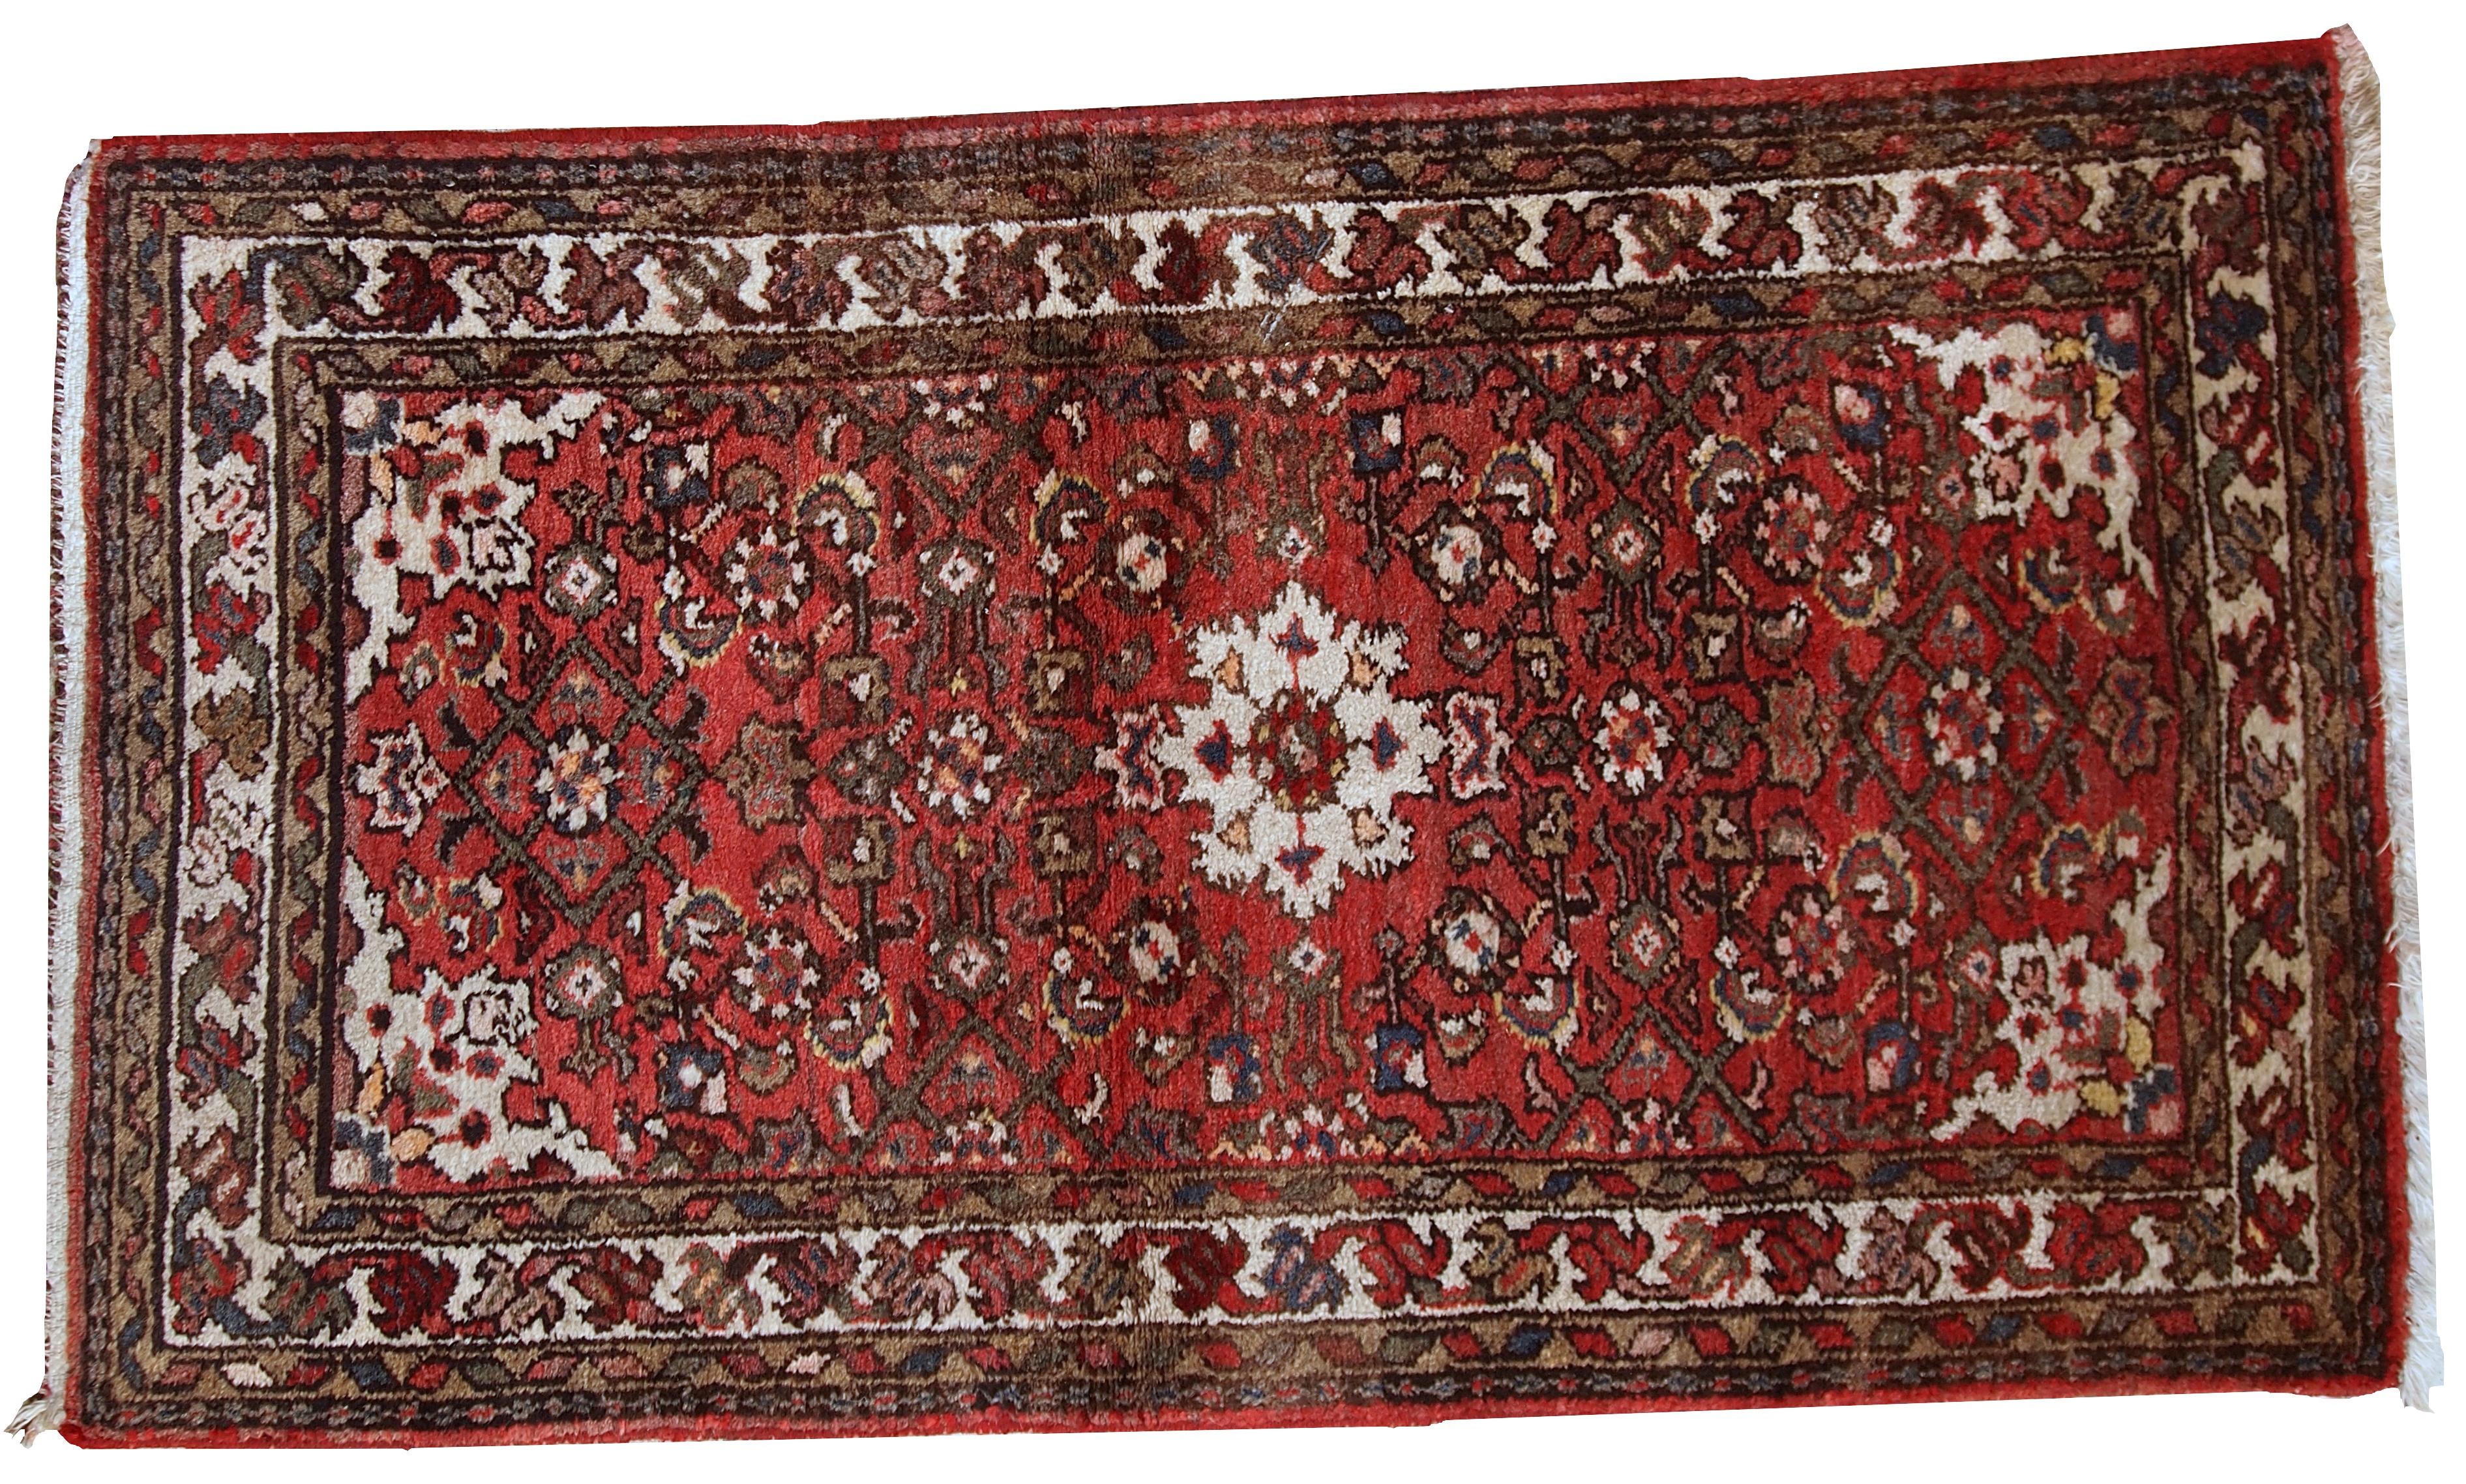 Vintage-Teppich im Hamadan-Stil in gutem Originalzustand. Der Teppich ist aus der Mitte des 20. Jahrhunderts und besteht aus roter Wolle. Maße: 2.4' x 4,3' (75 cm x 132 cm).